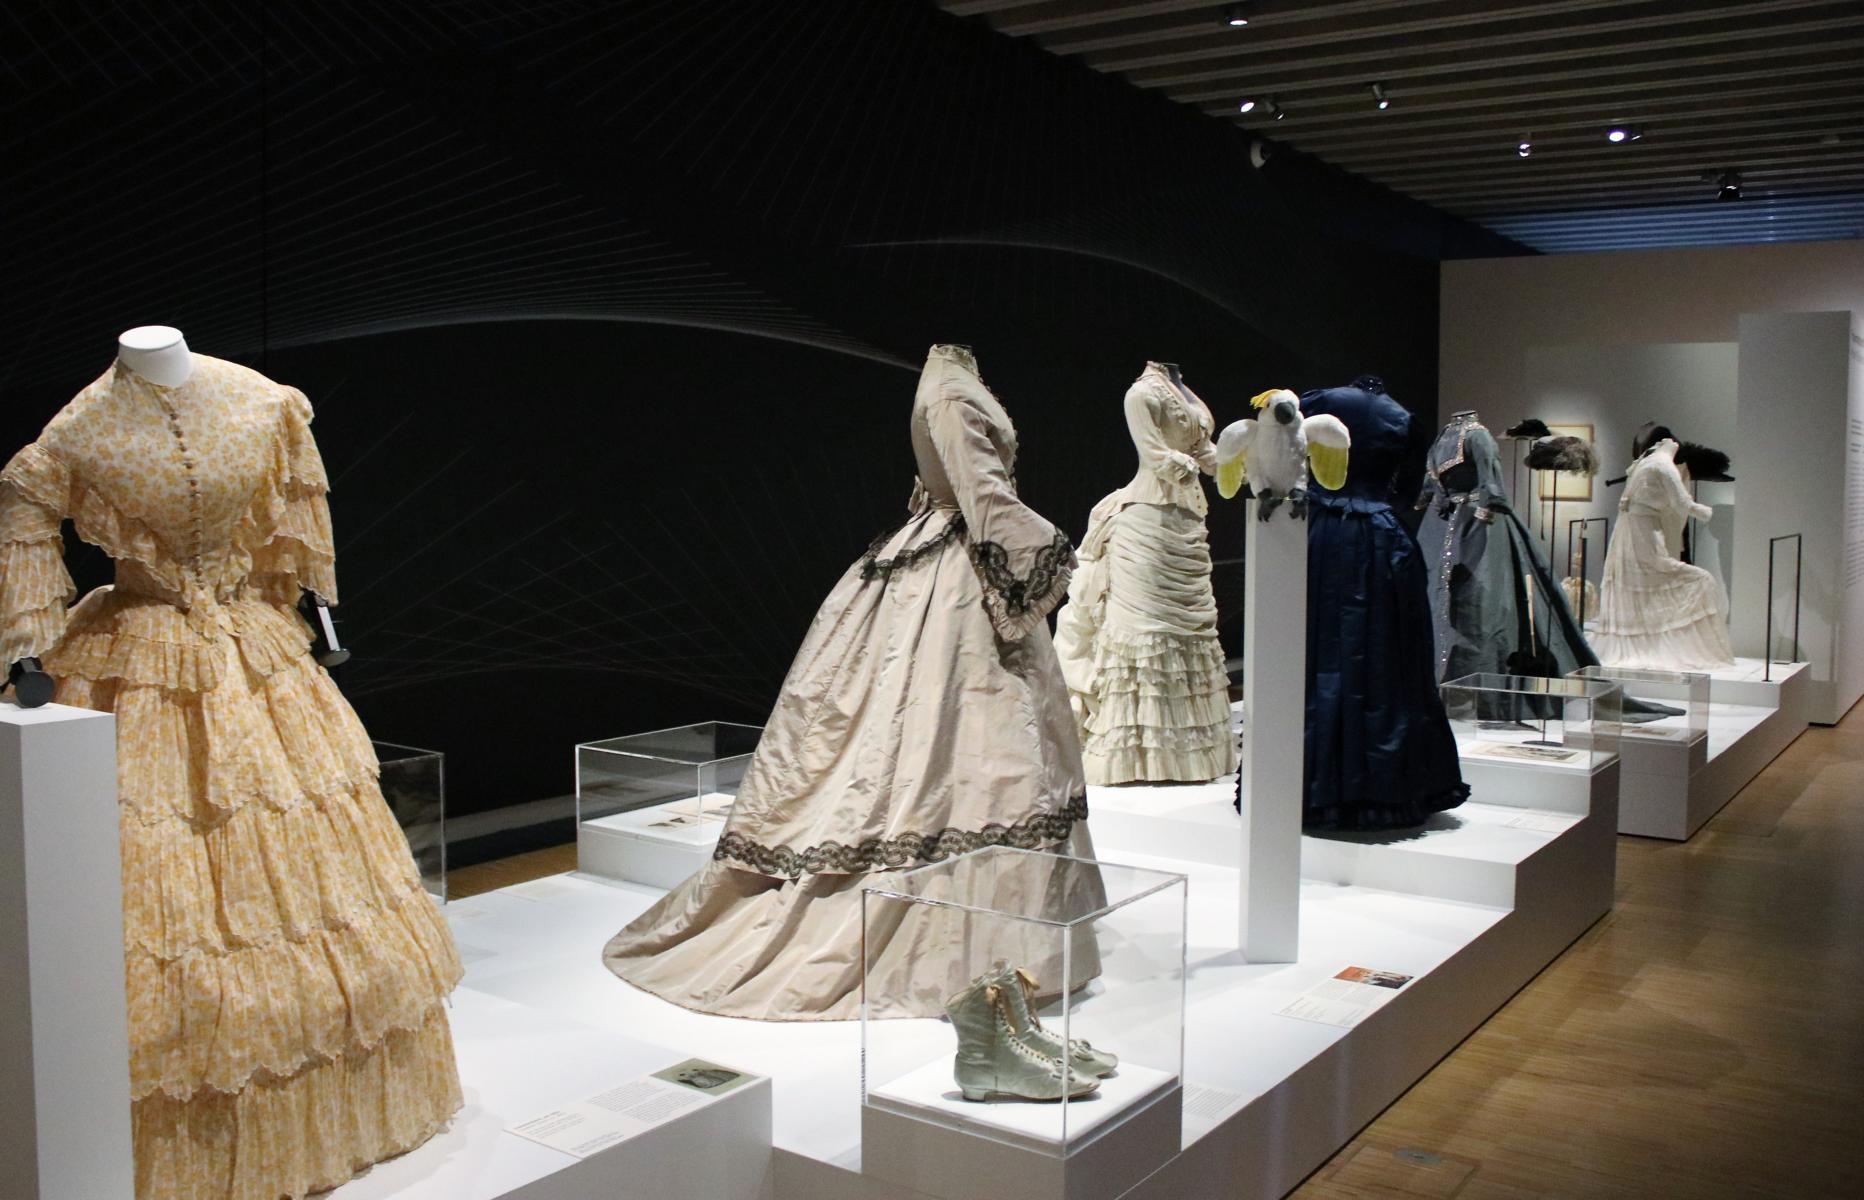  'Kleider in Bewegung' - Ausstellung im Historisches Museum - unbedingt sehenswert. < >FOTOS in Blde:  